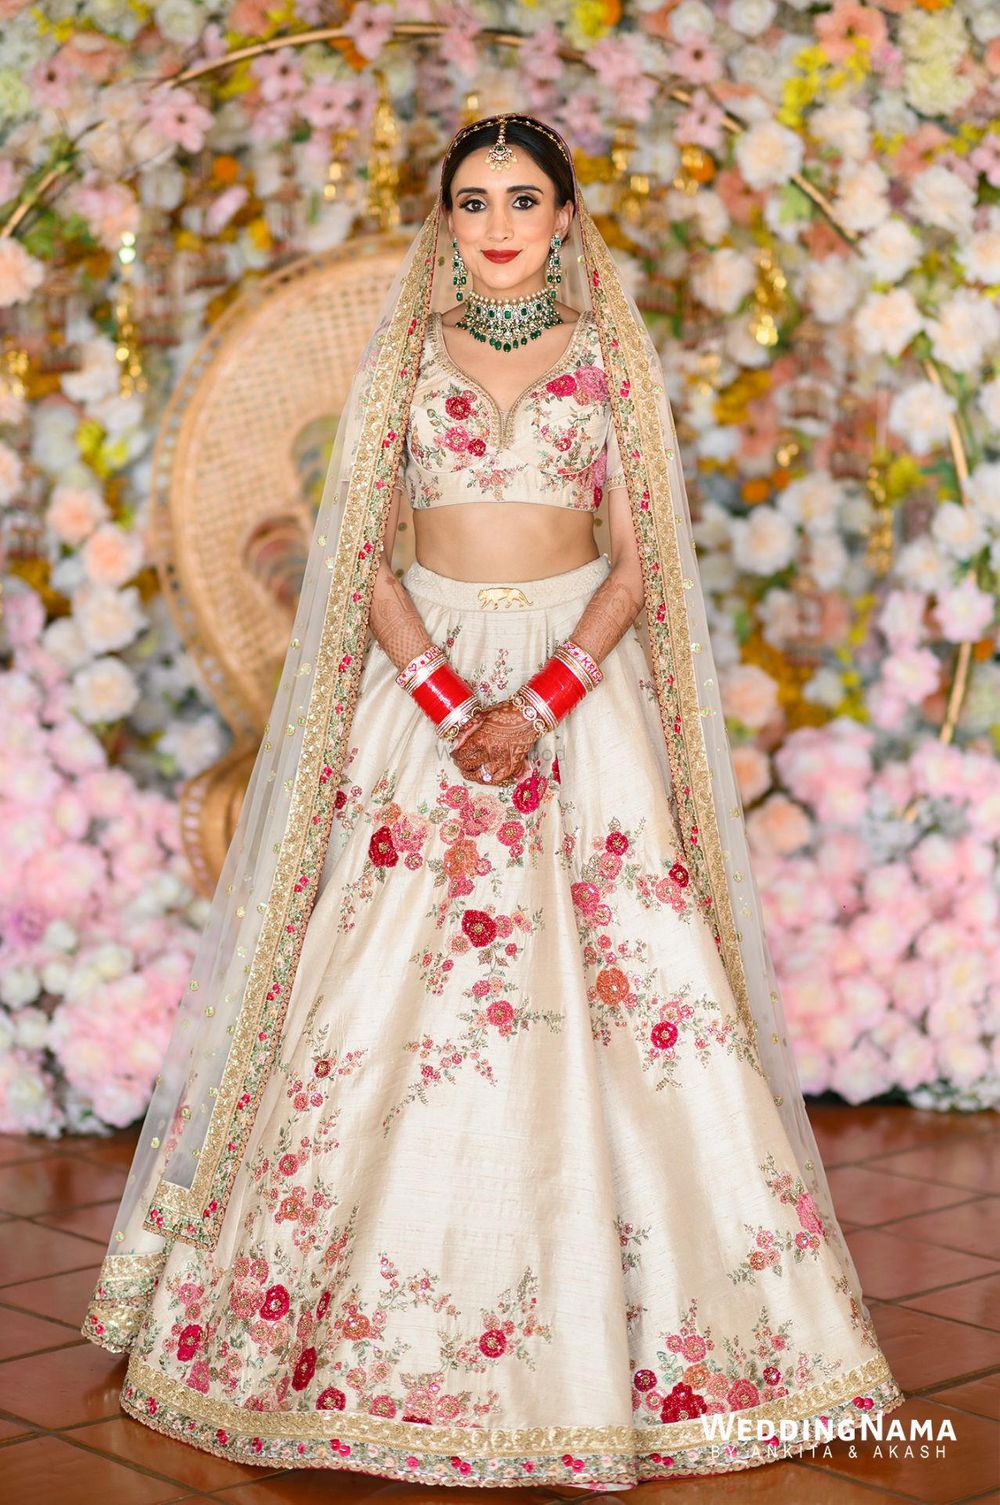 Photo of Bride wearing an offbeat white floral Sabyasachi lehenga